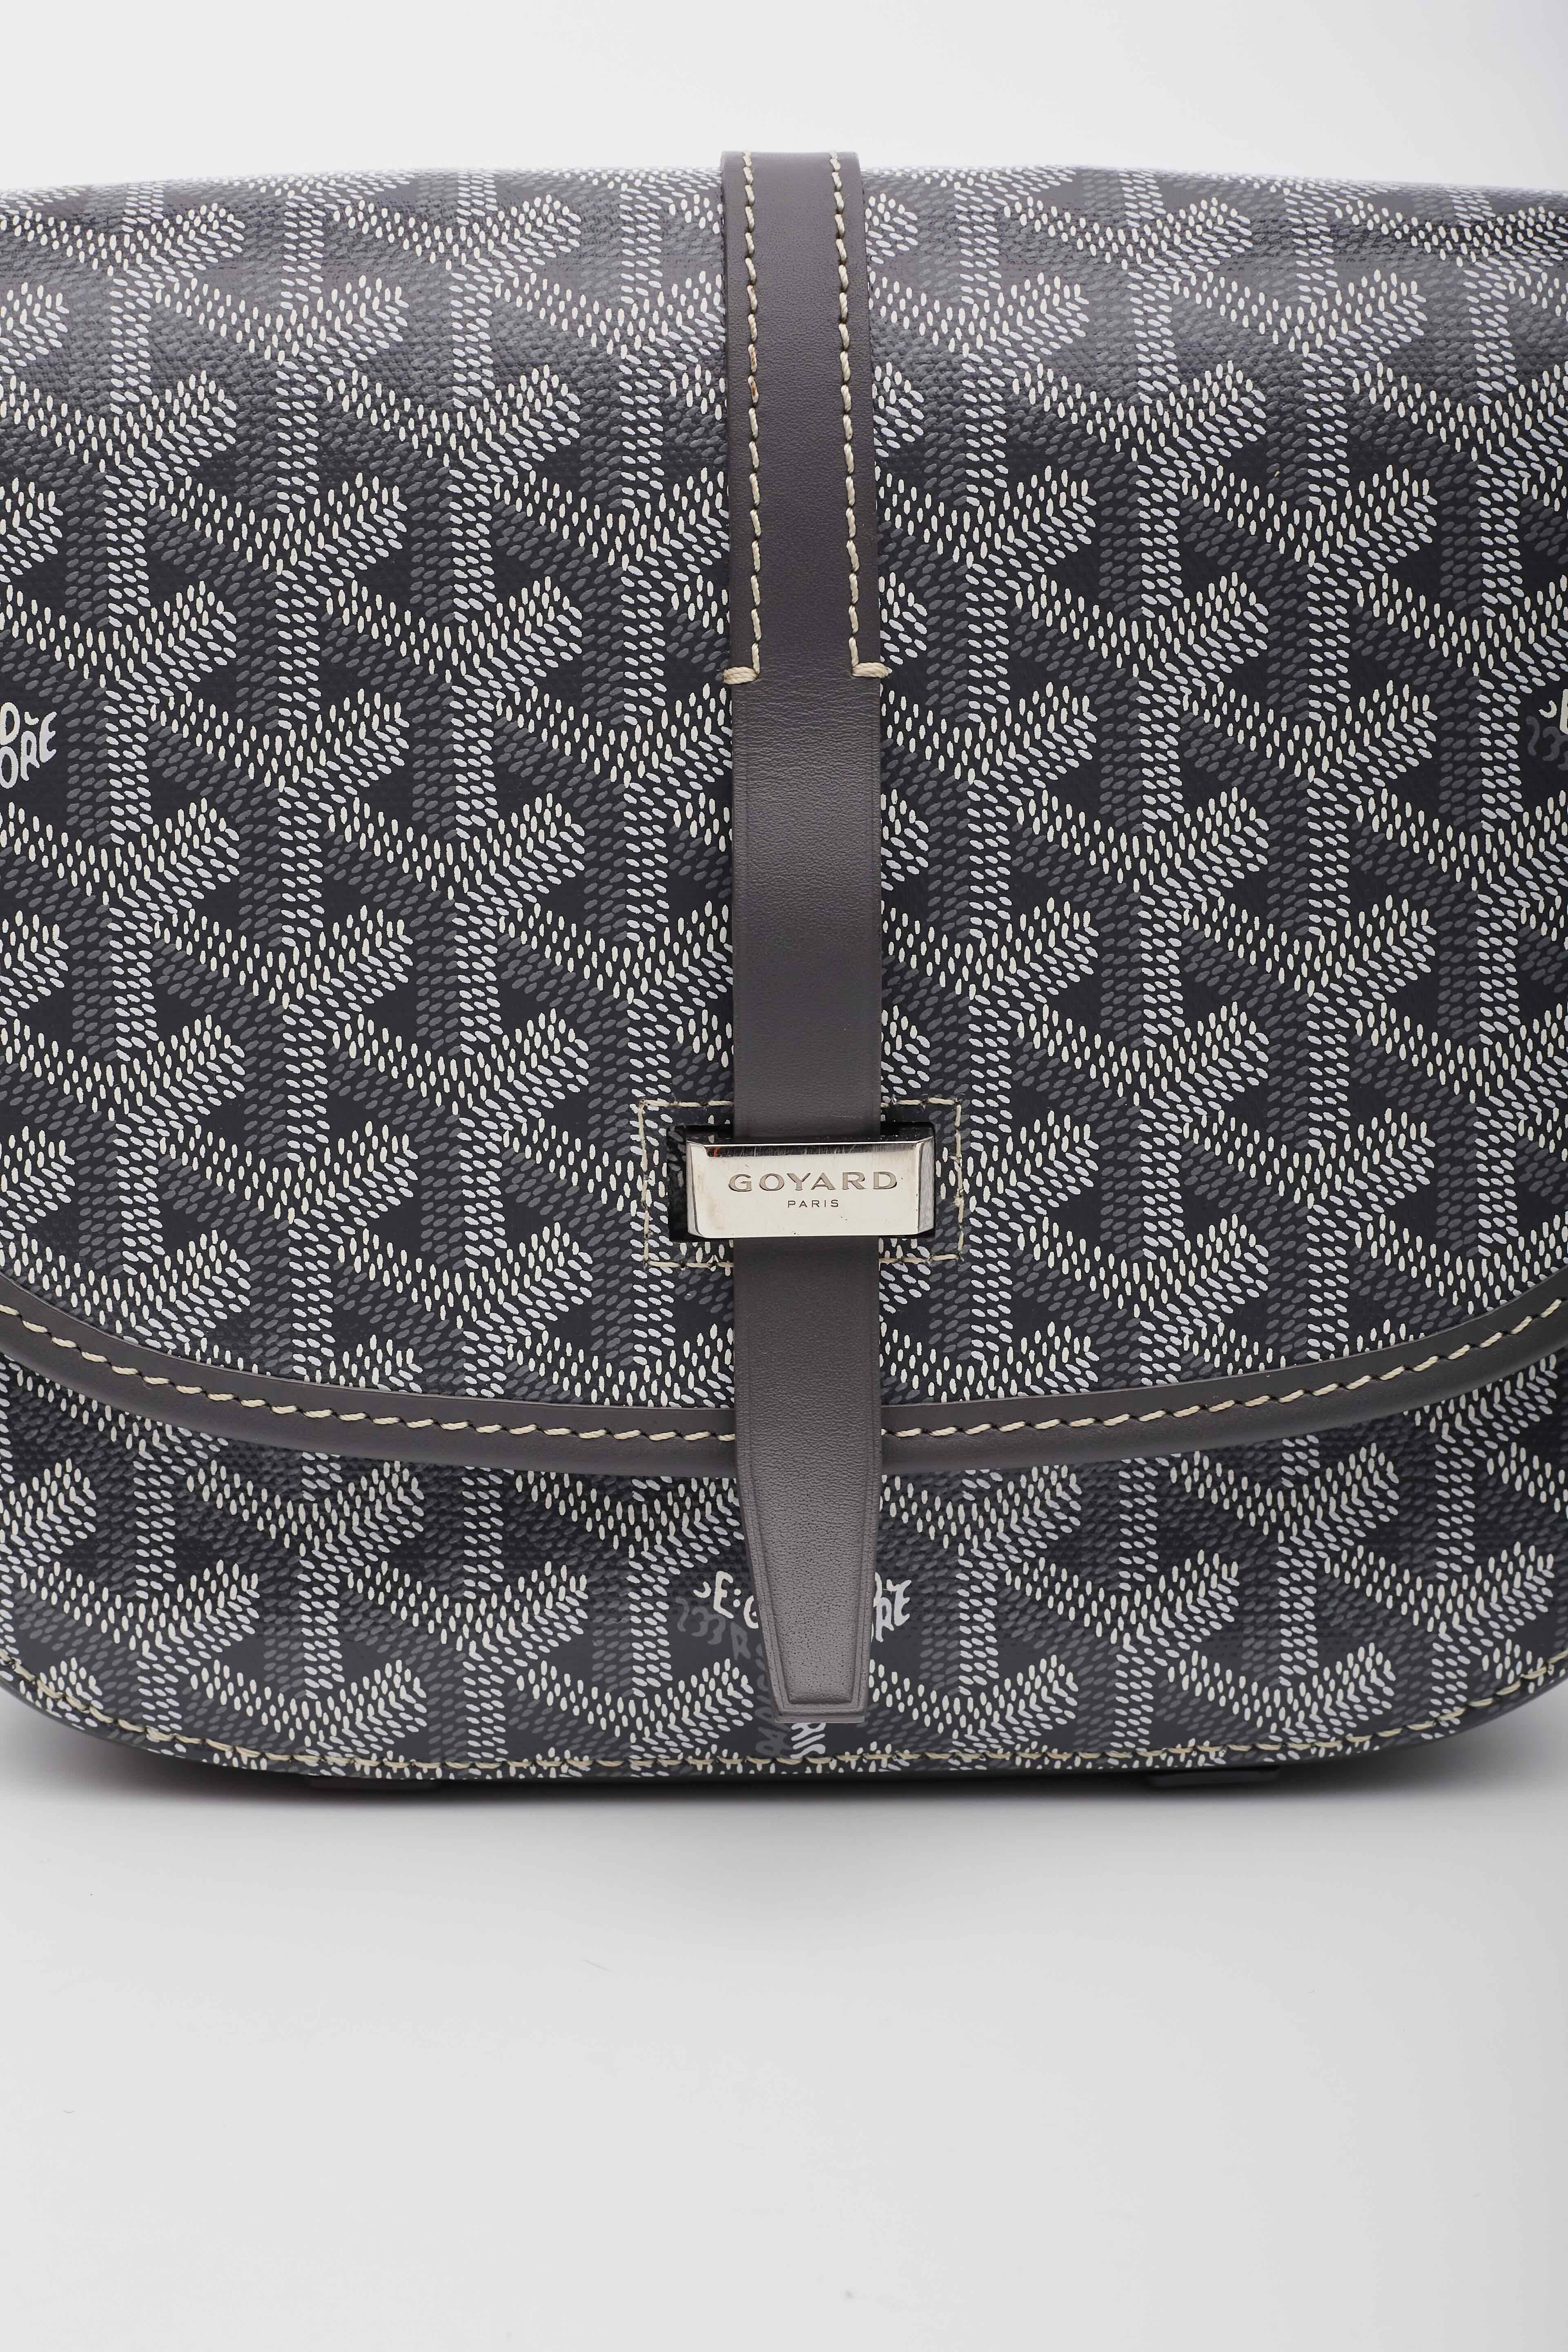  Goyard Belvedere Pm Grey Shoulder Bag Pour femmes 